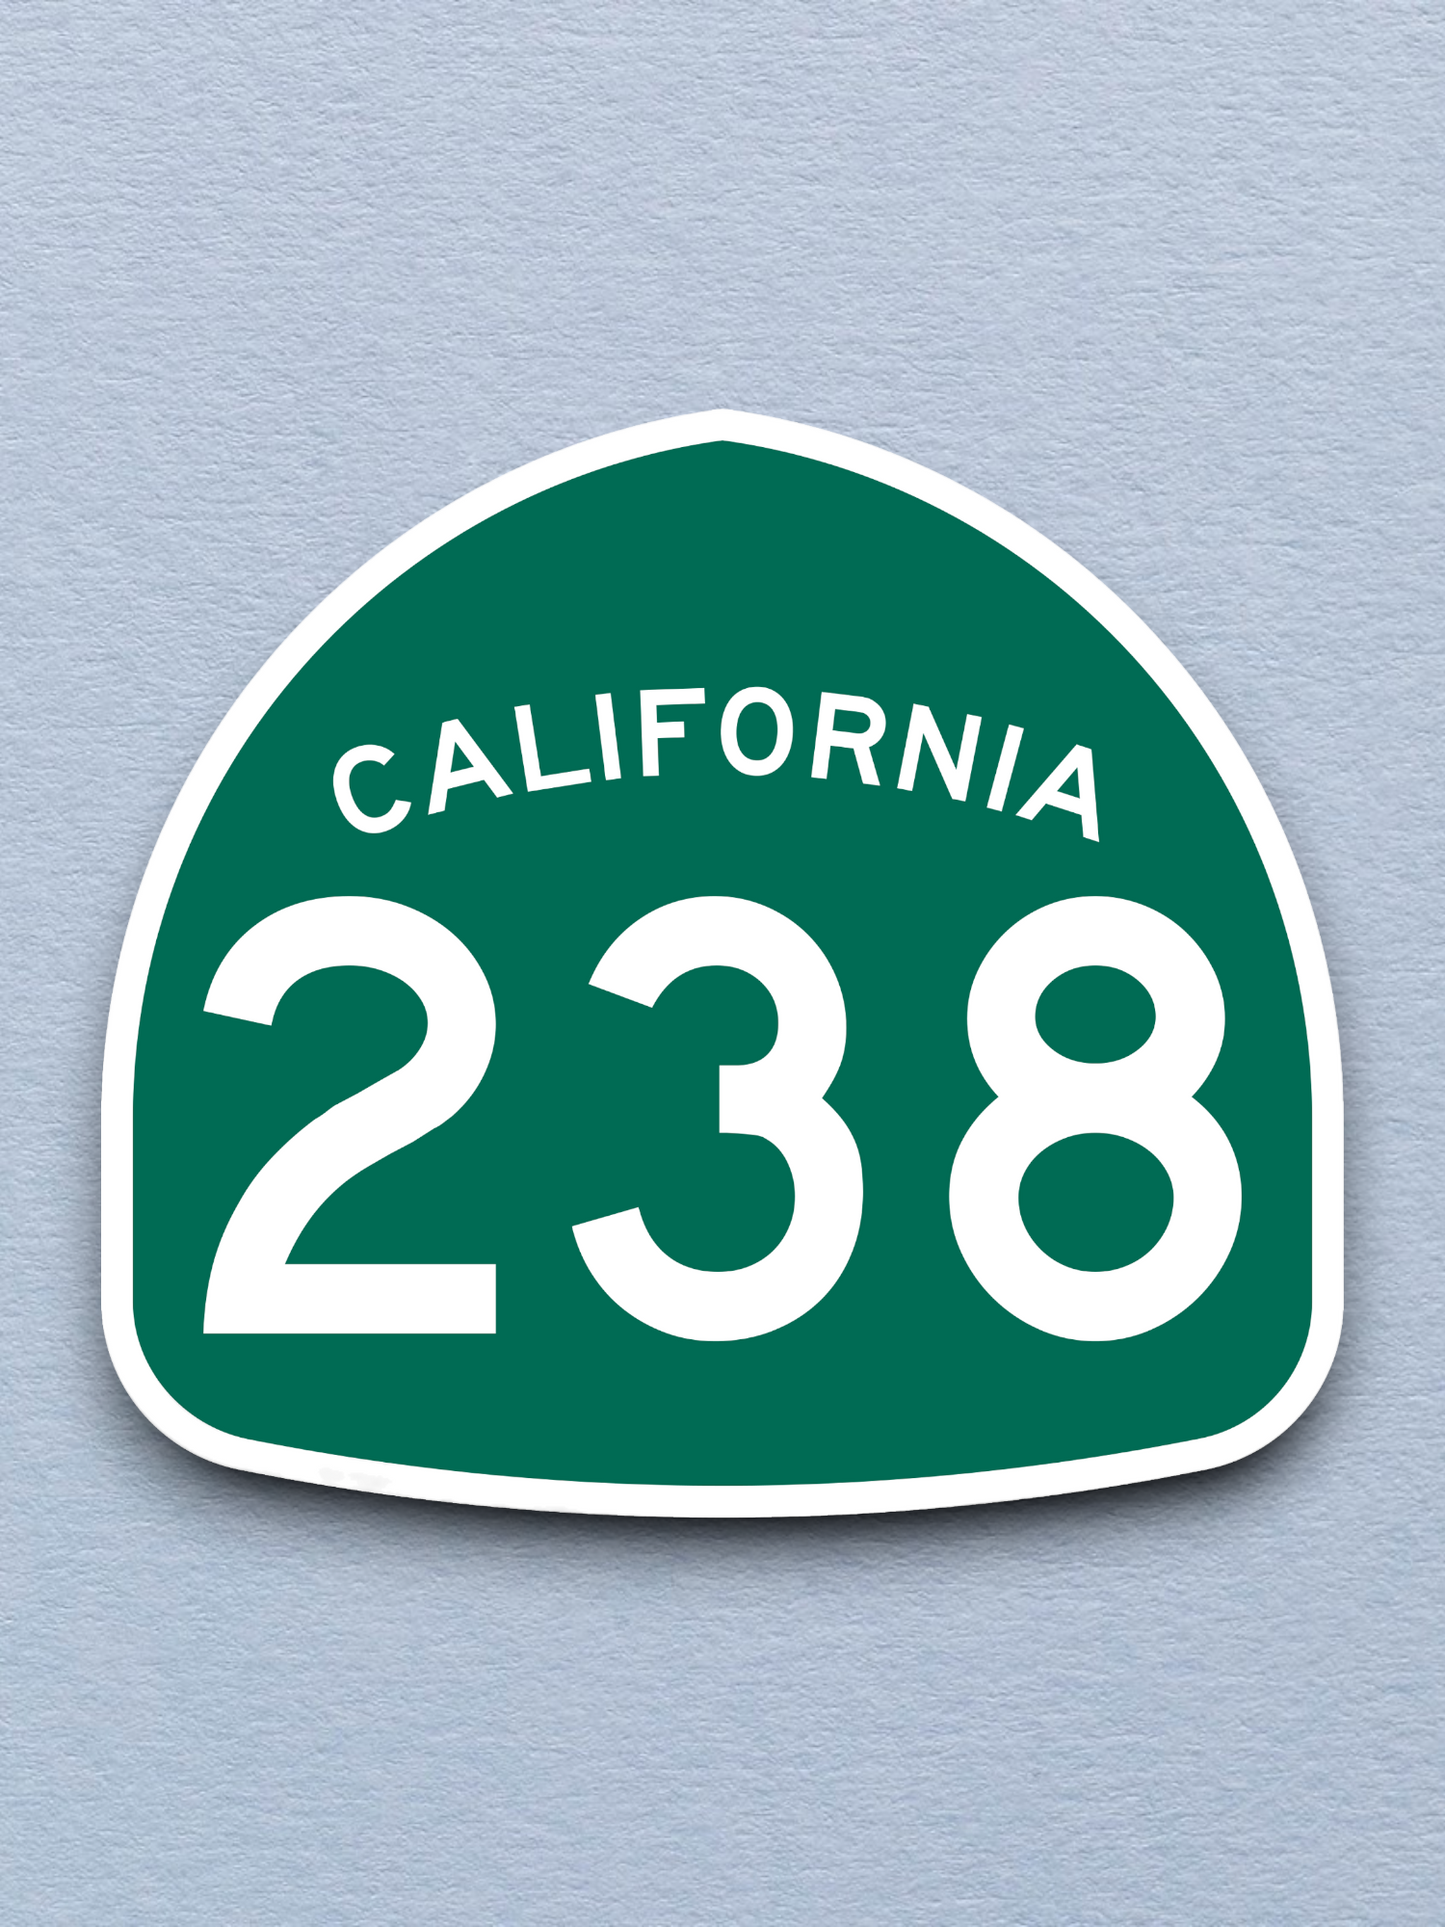 California State Route 238 Sticker